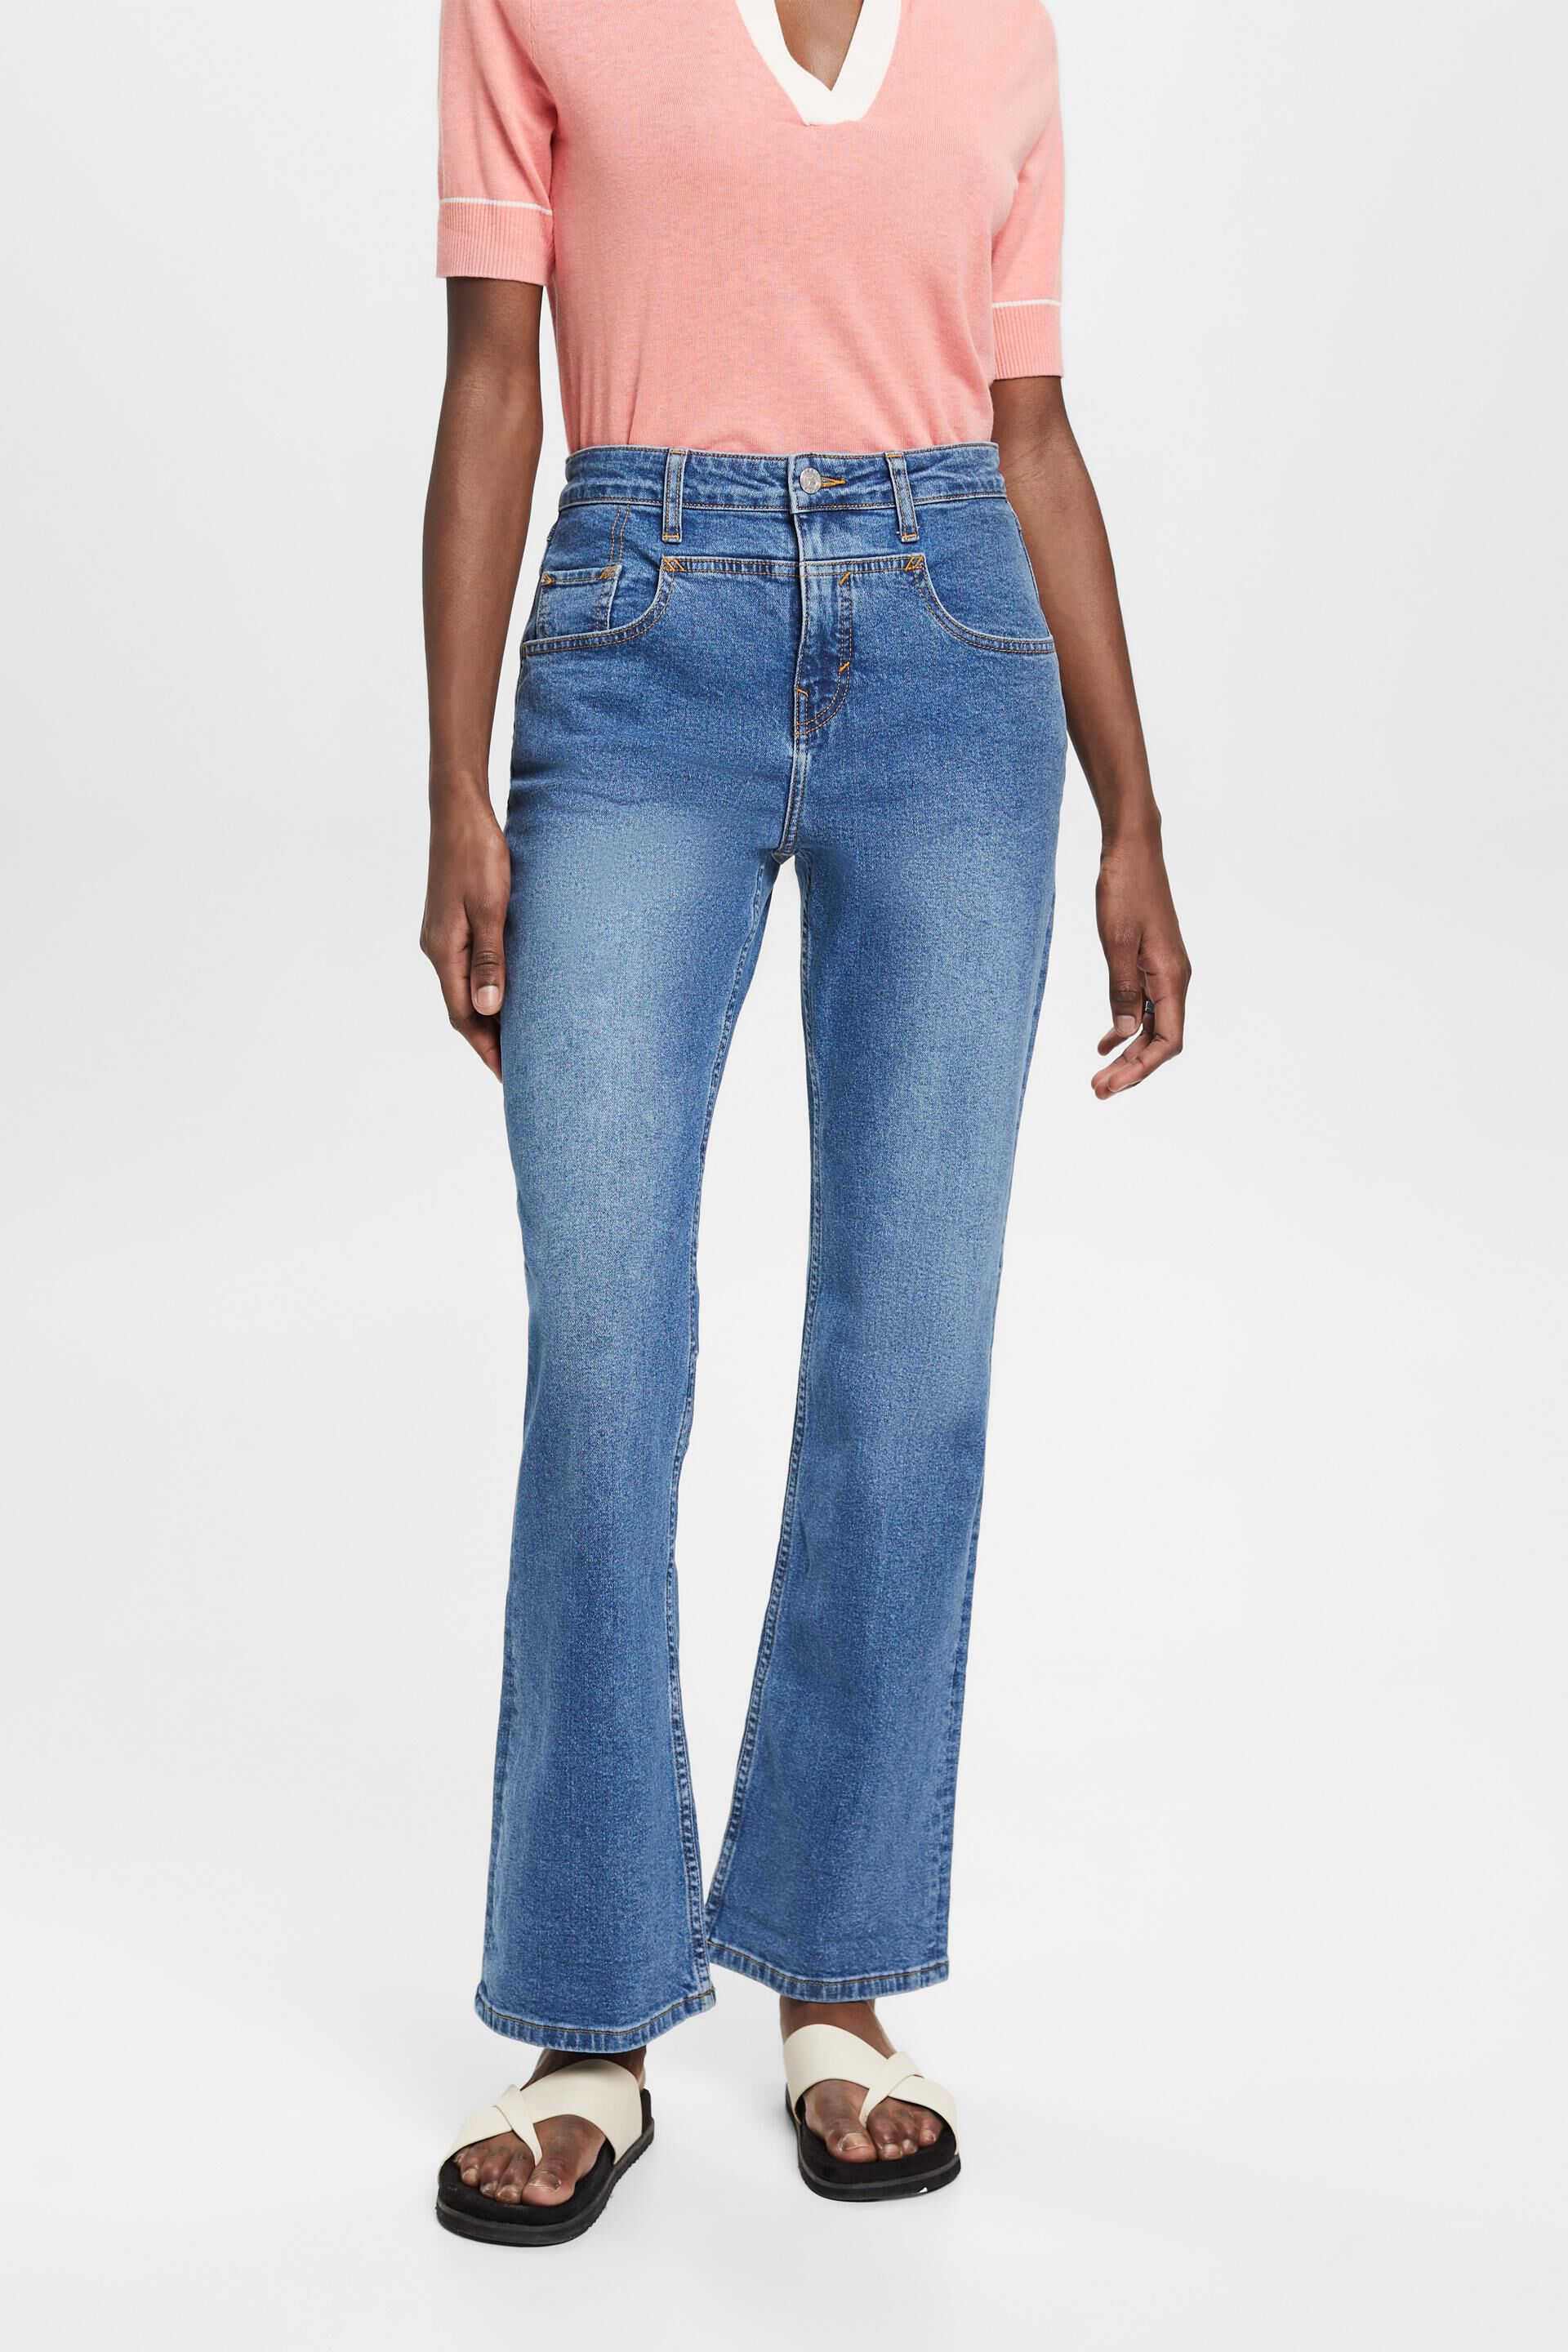 Esprit Damen Bootcut jeans with a distinctive yoke